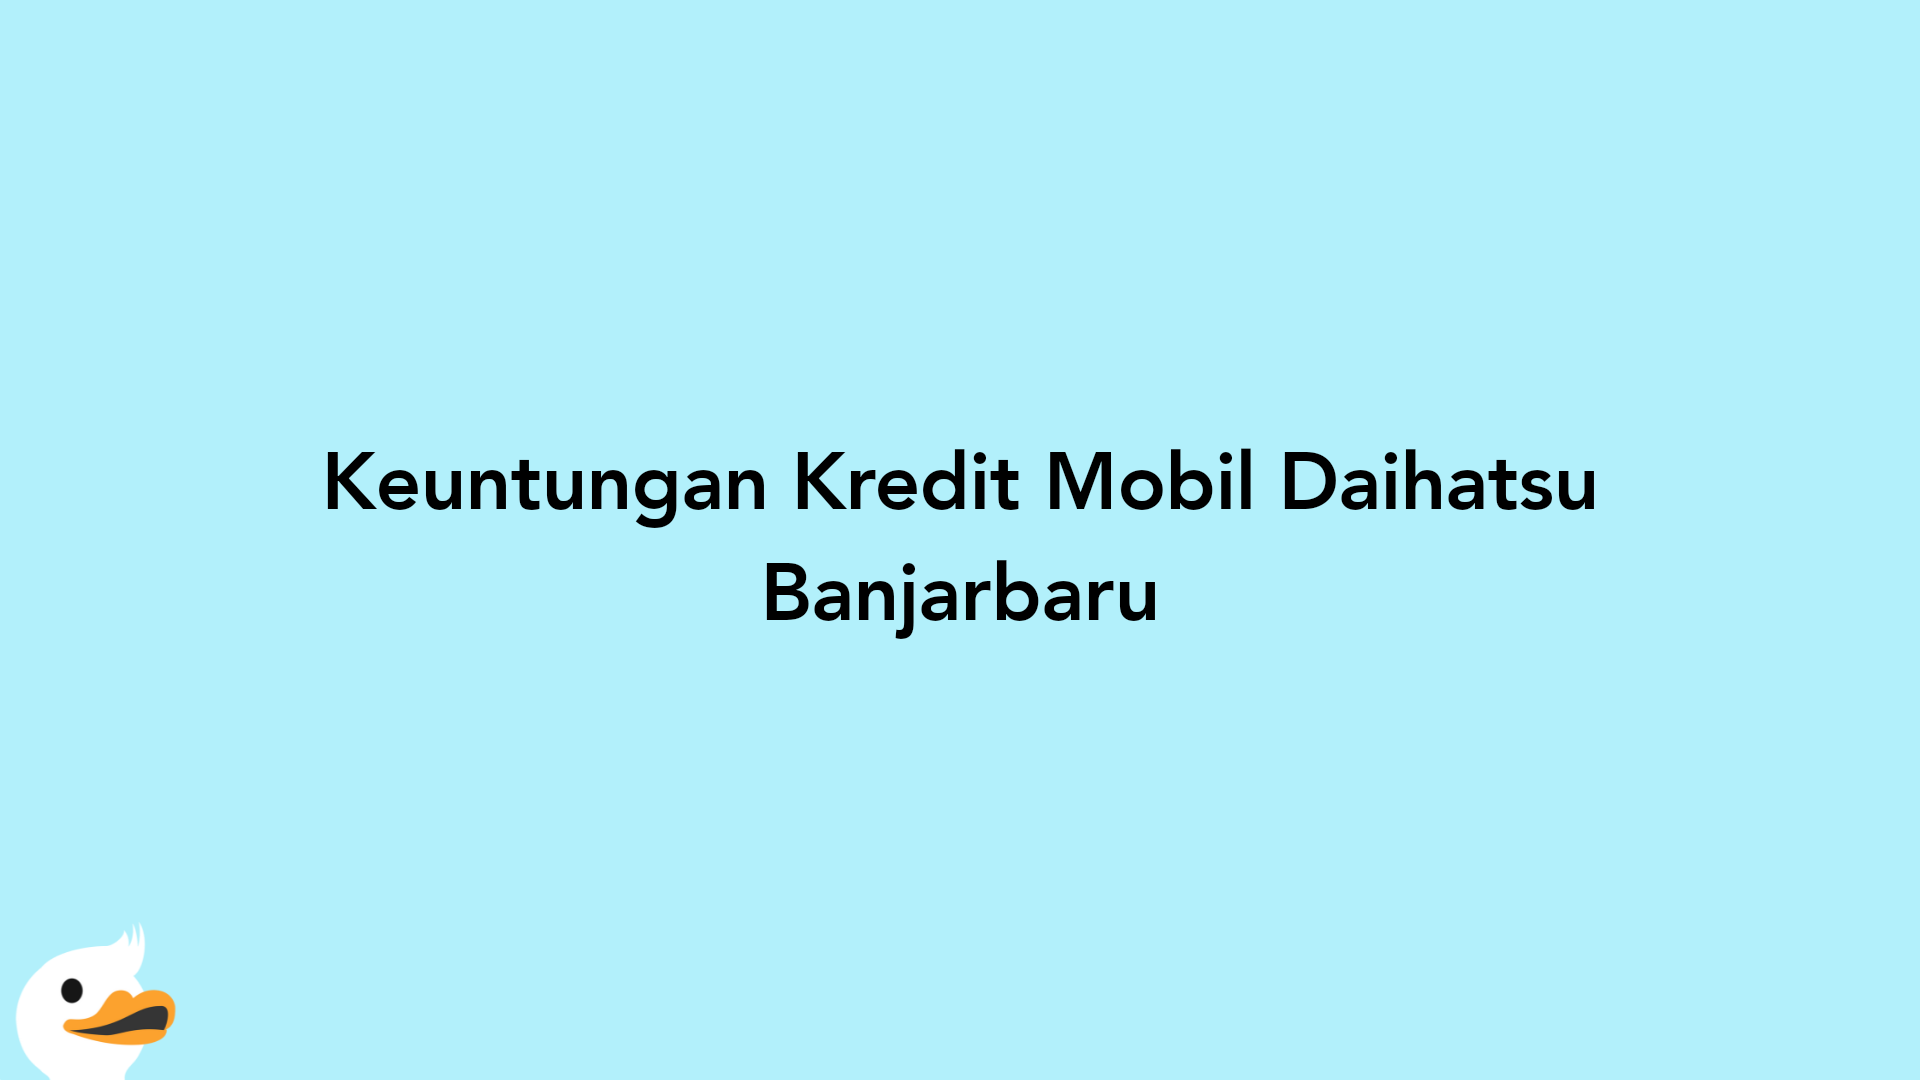 Keuntungan Kredit Mobil Daihatsu Banjarbaru